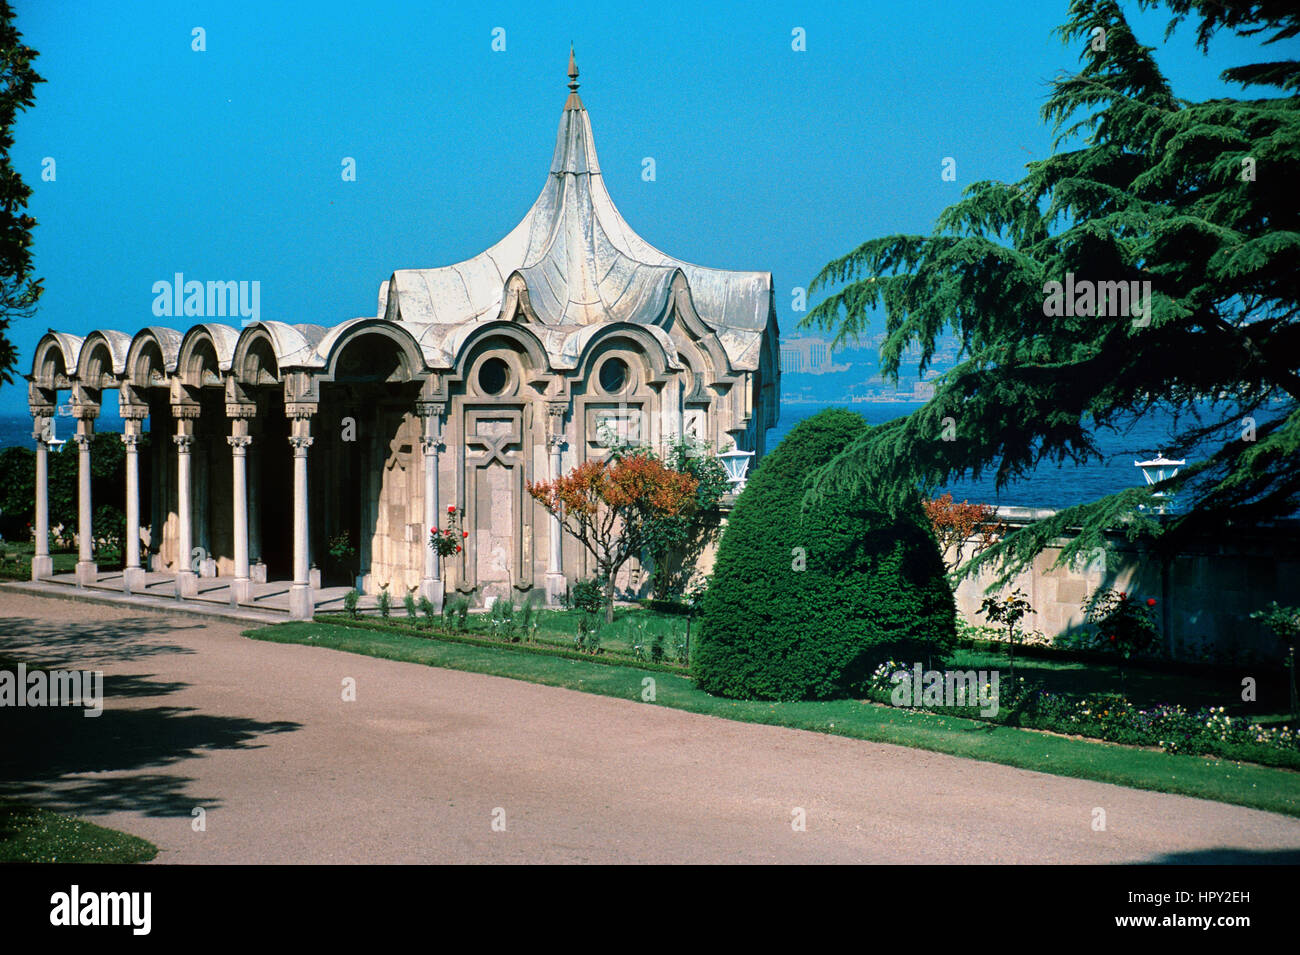 Barock-Garten-Pavillon oder Kiosk auf dem Gelände des Beylerbey oder Beylerbeyi-Palast am asiatischen Ufer des Bosporus oder Bosporus Istanbul Türkei Stockfoto